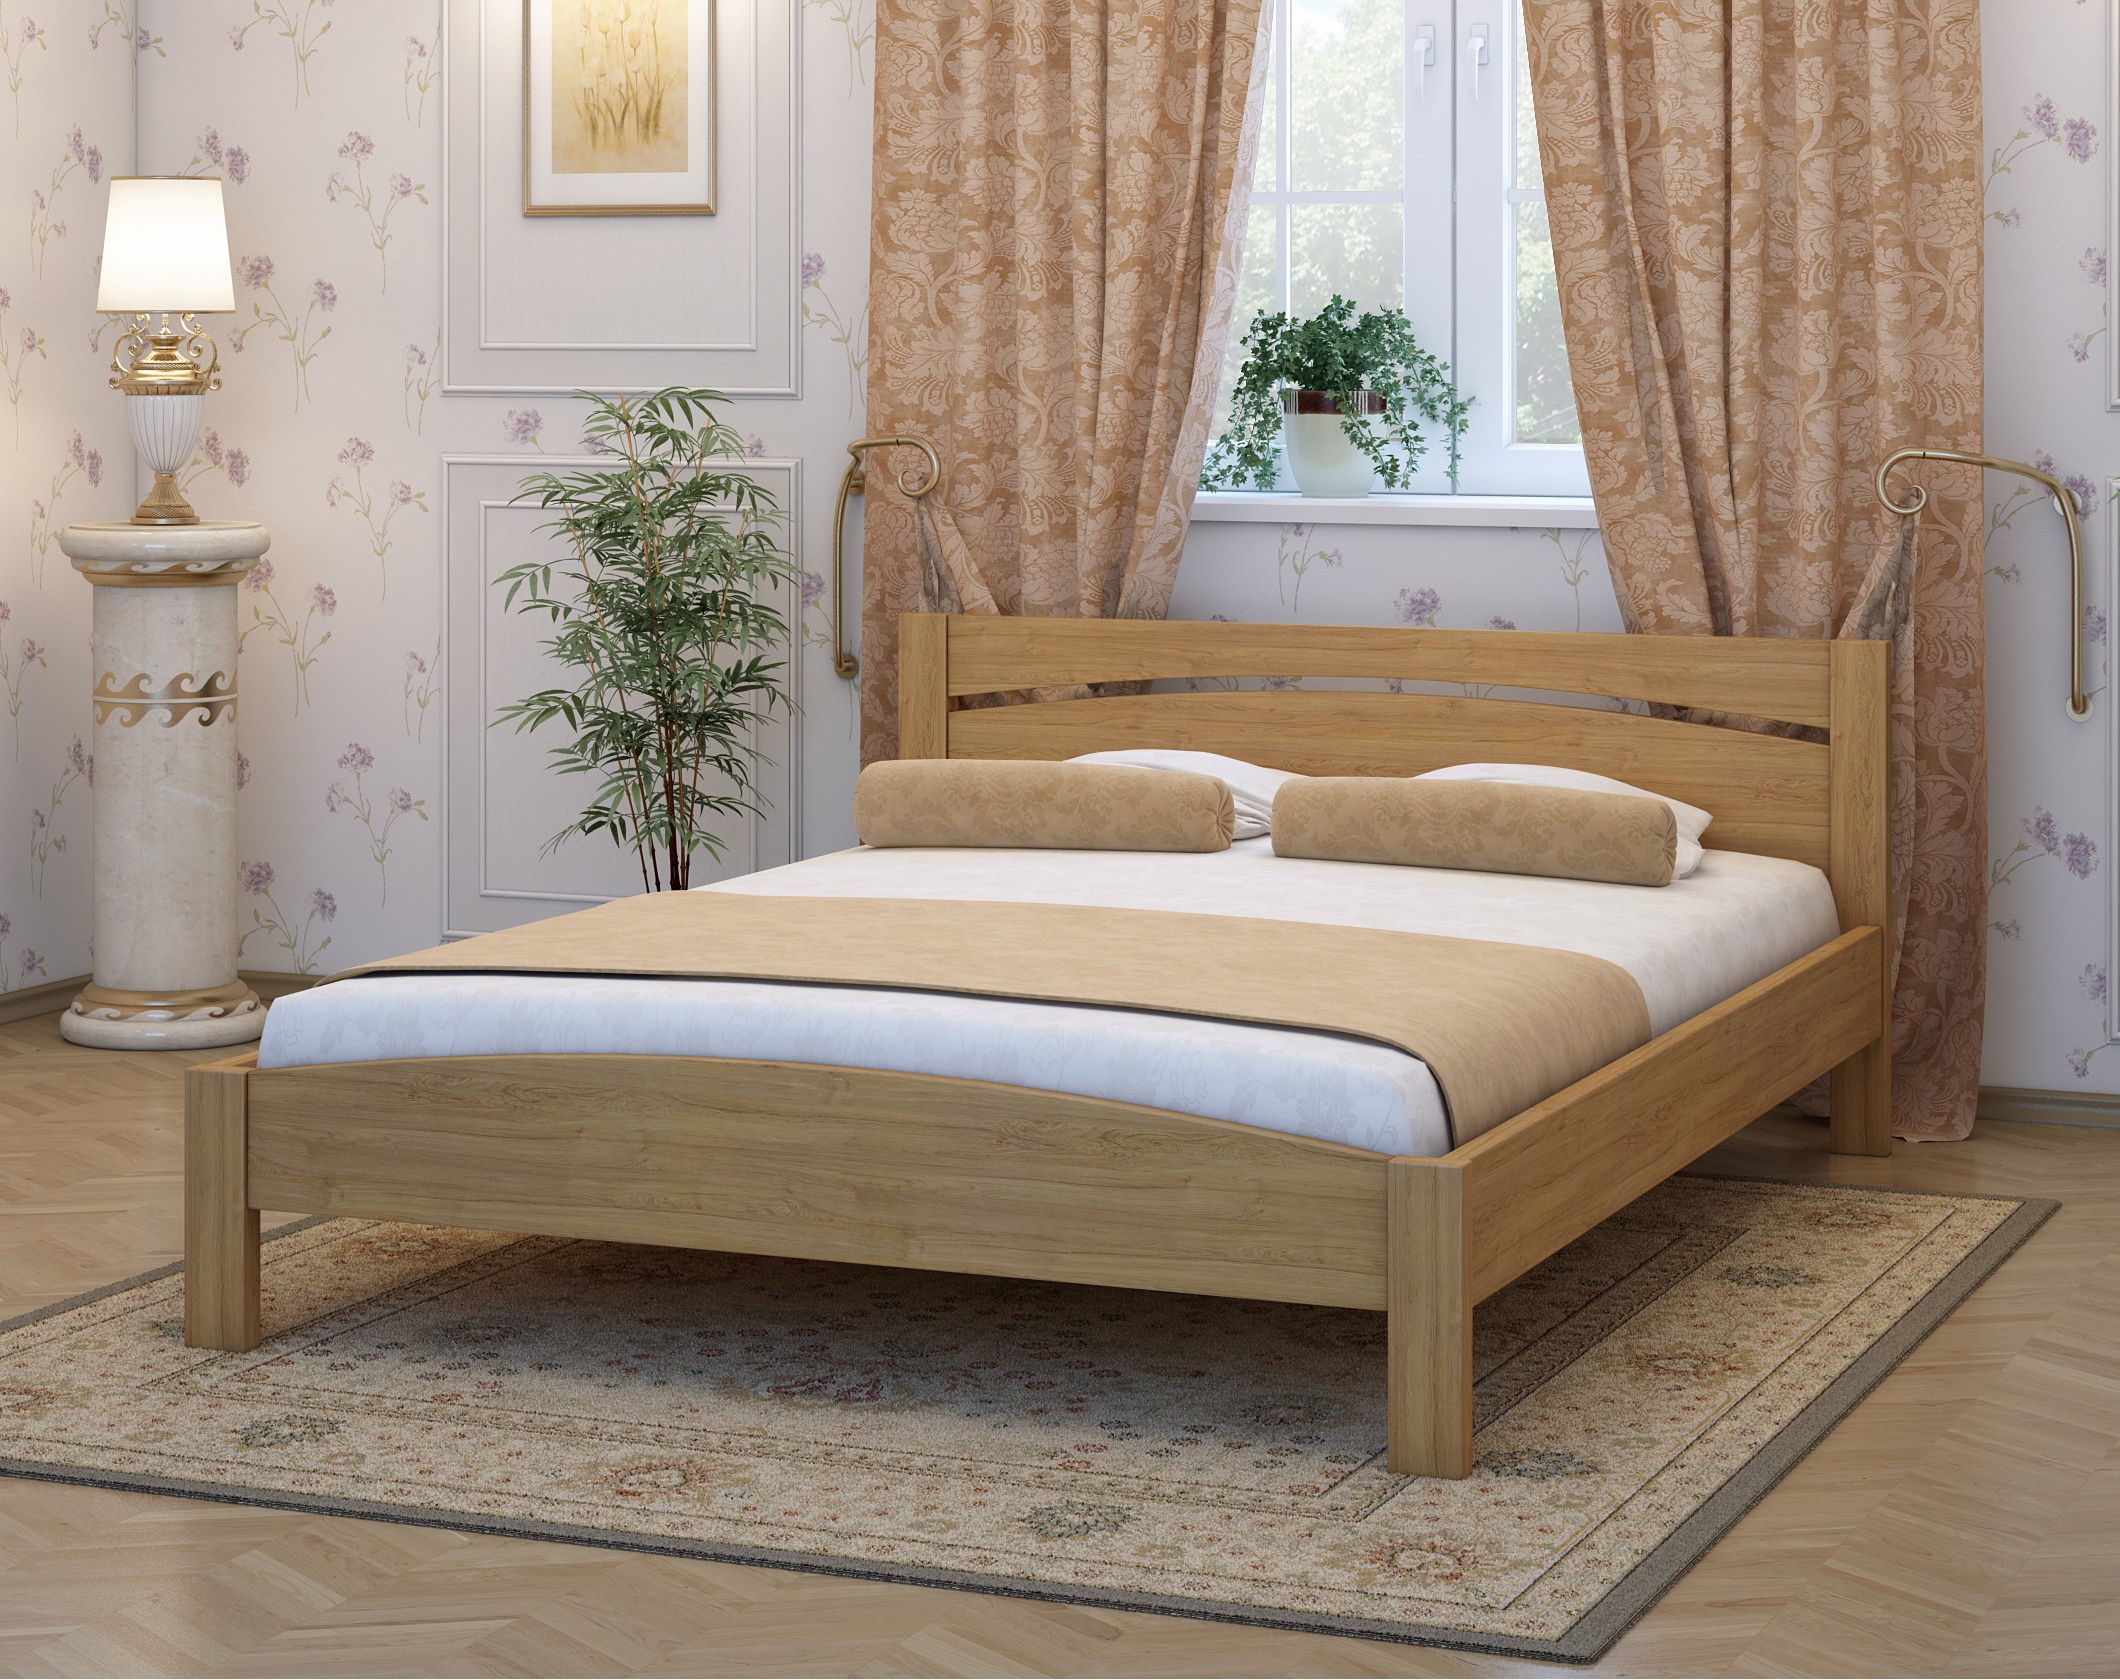 Двуспальная деревянная кровать светлых тонов